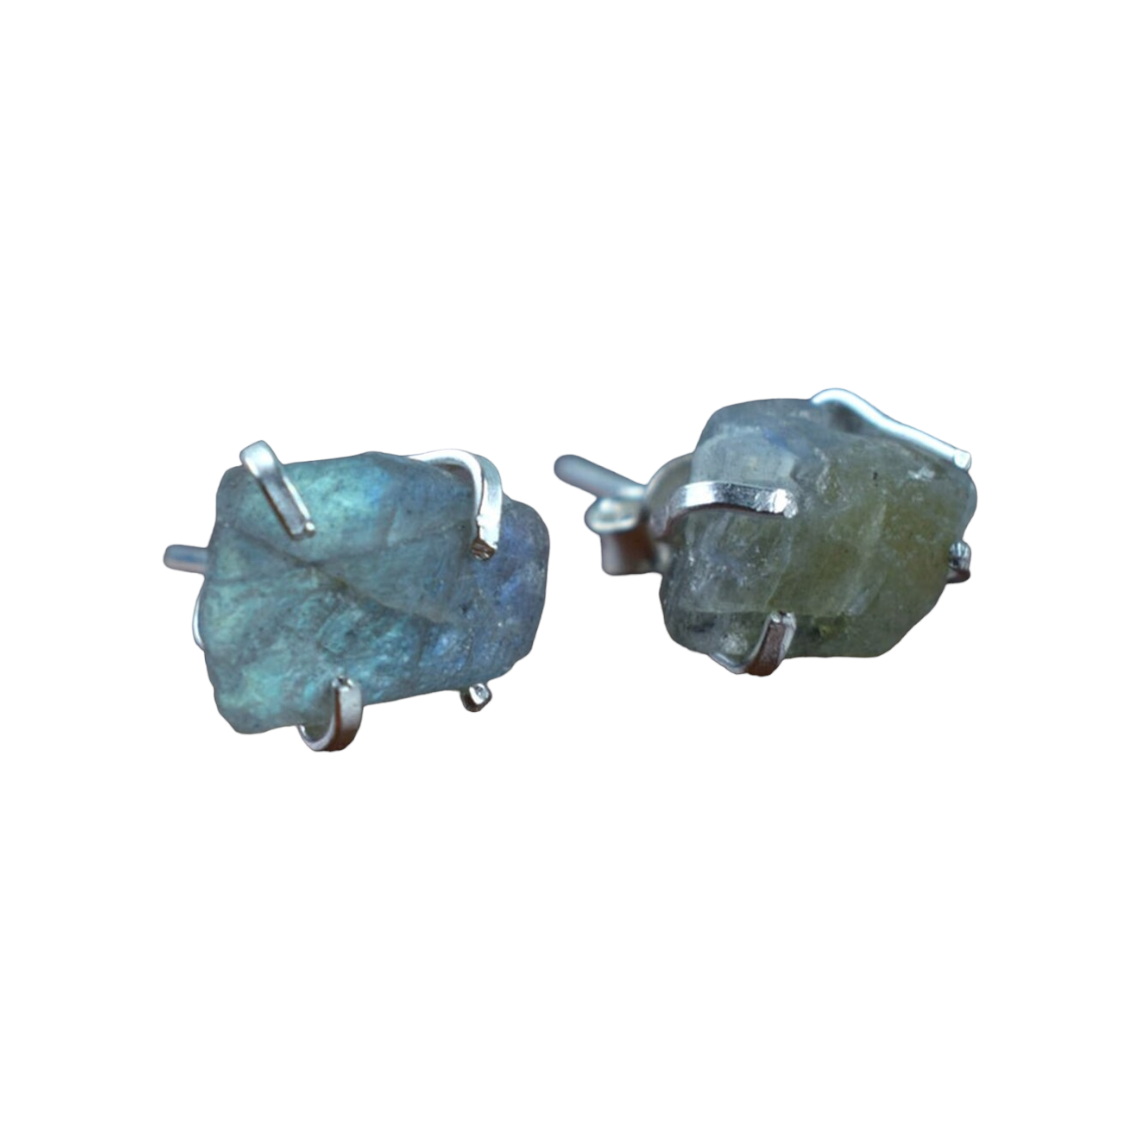 Rough Cut Labradorite Gemstone Women Earrings Jewelry Supplier Trendy 925 SolidSterling Silver Stud Earrings